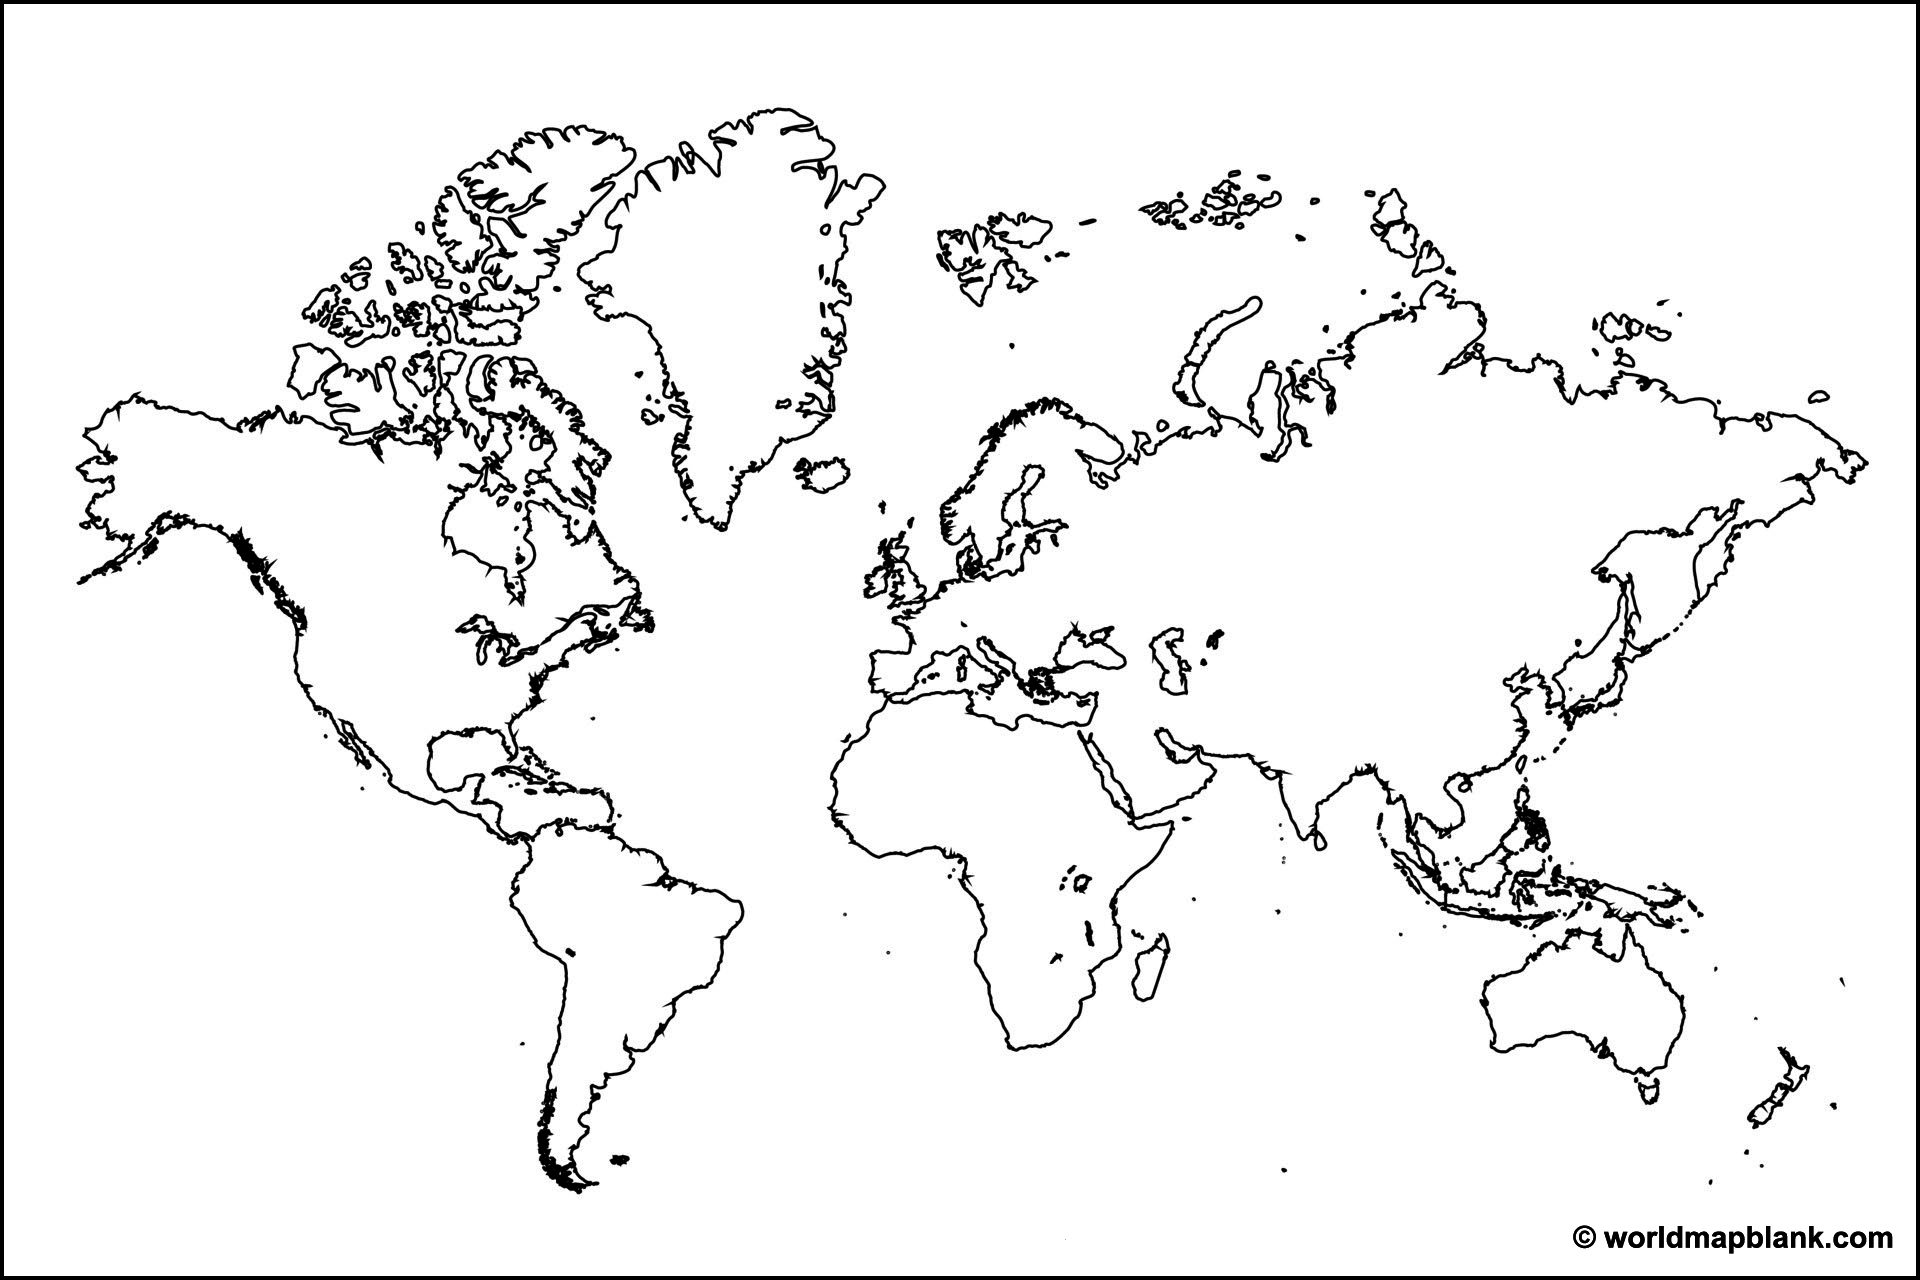 Mapa do mundo em branco